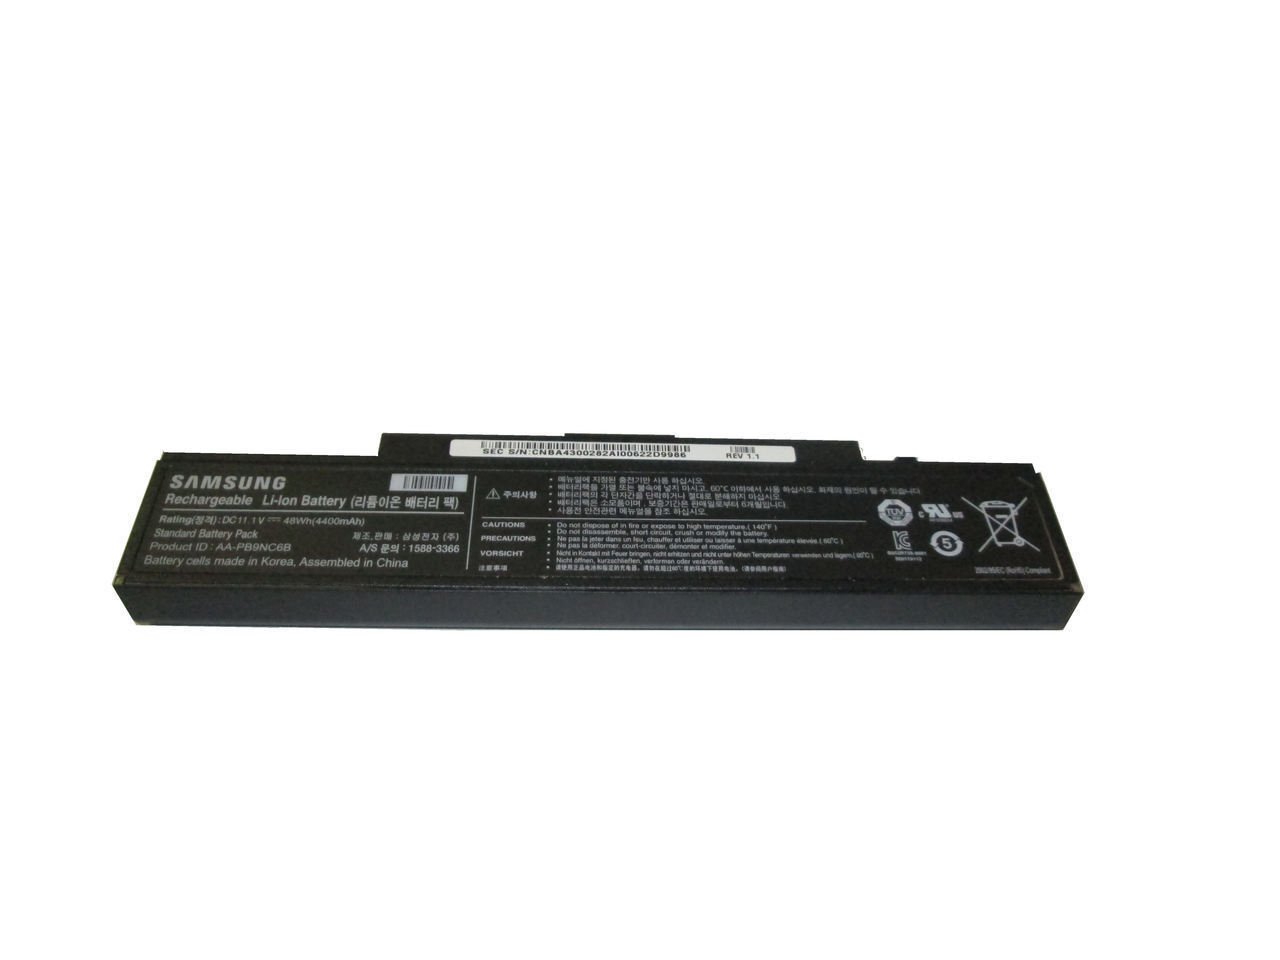 Orjinal Samsung NP550P5C NP550 Notebook Batarya Pil (AA-PB9NNC6B)